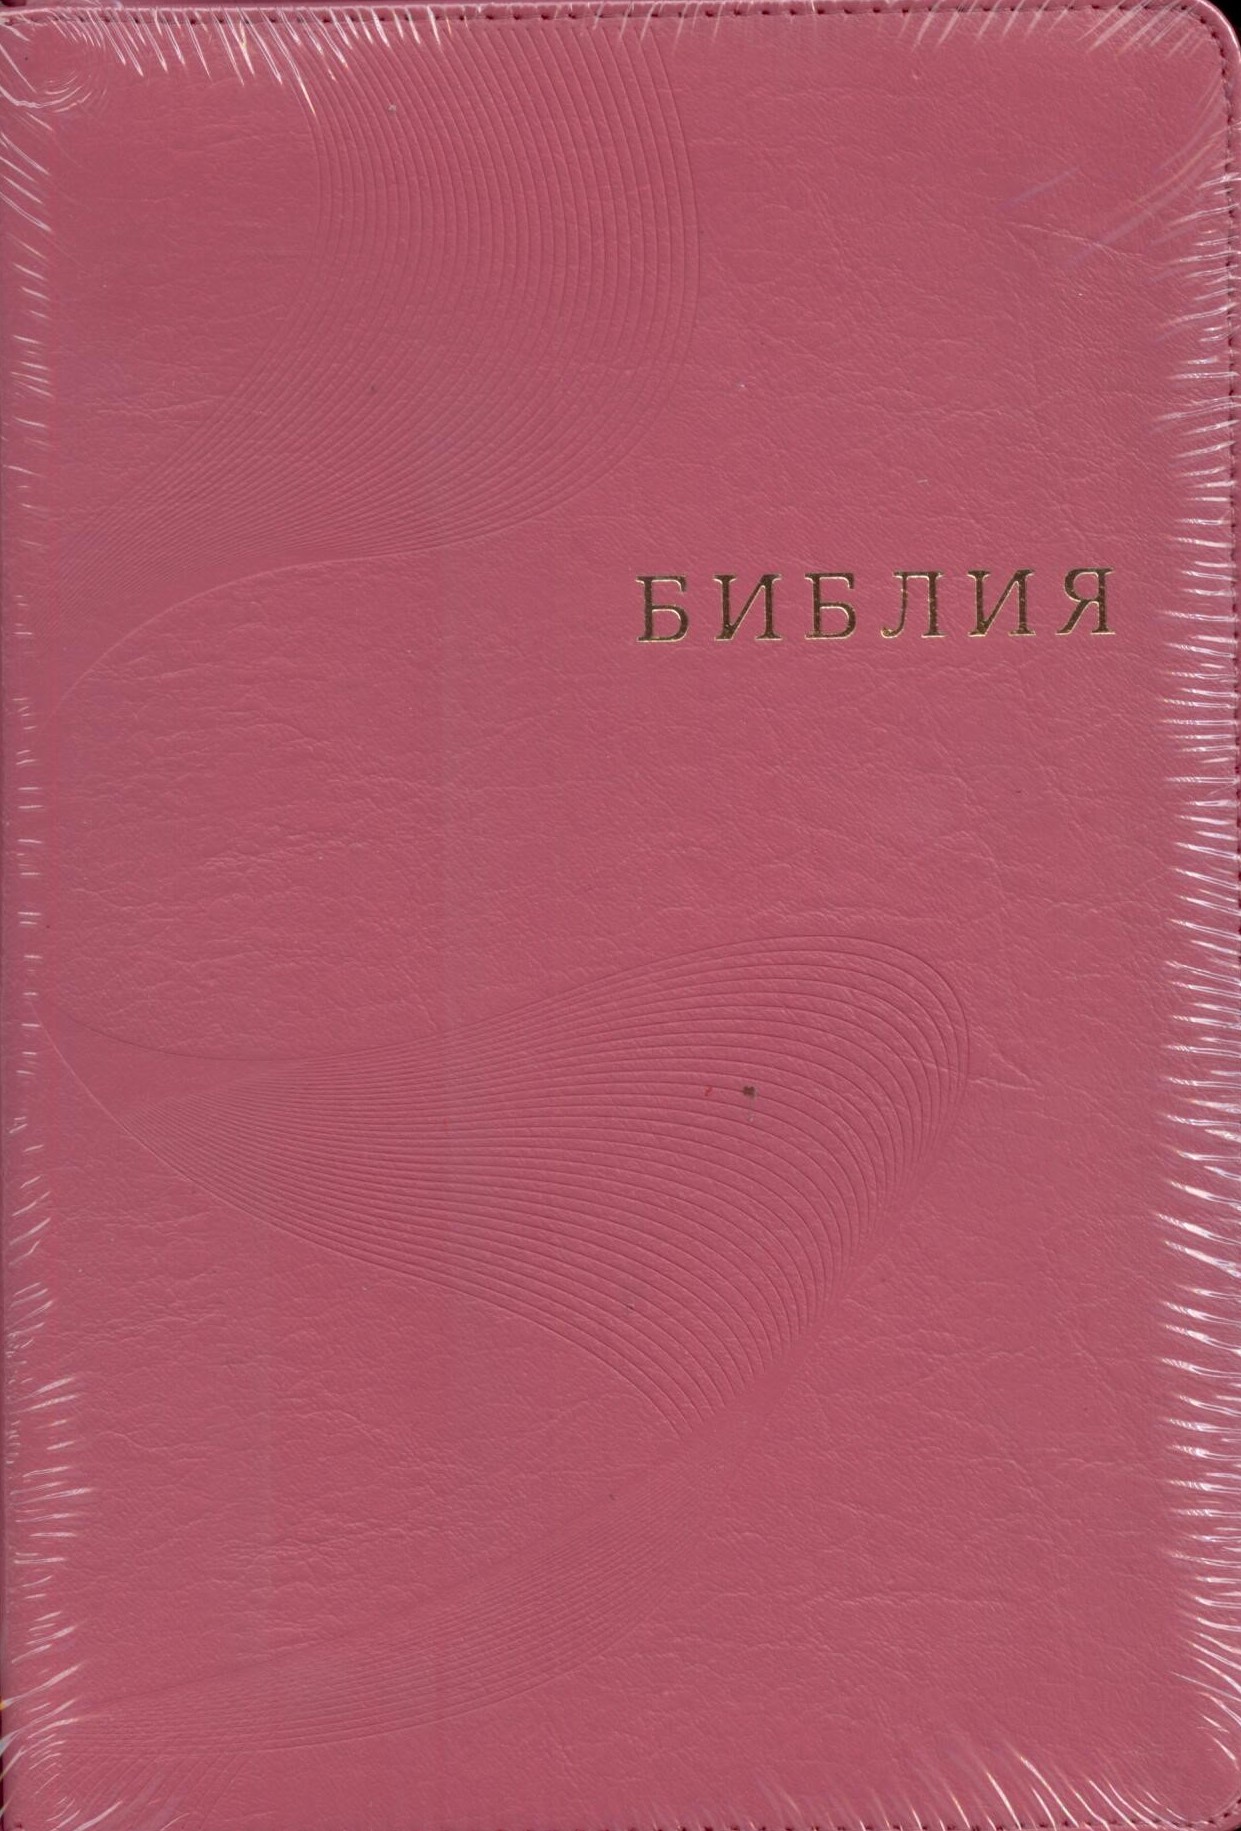 Библия 077 ZTI FIB, ред. 1998 г. розовая